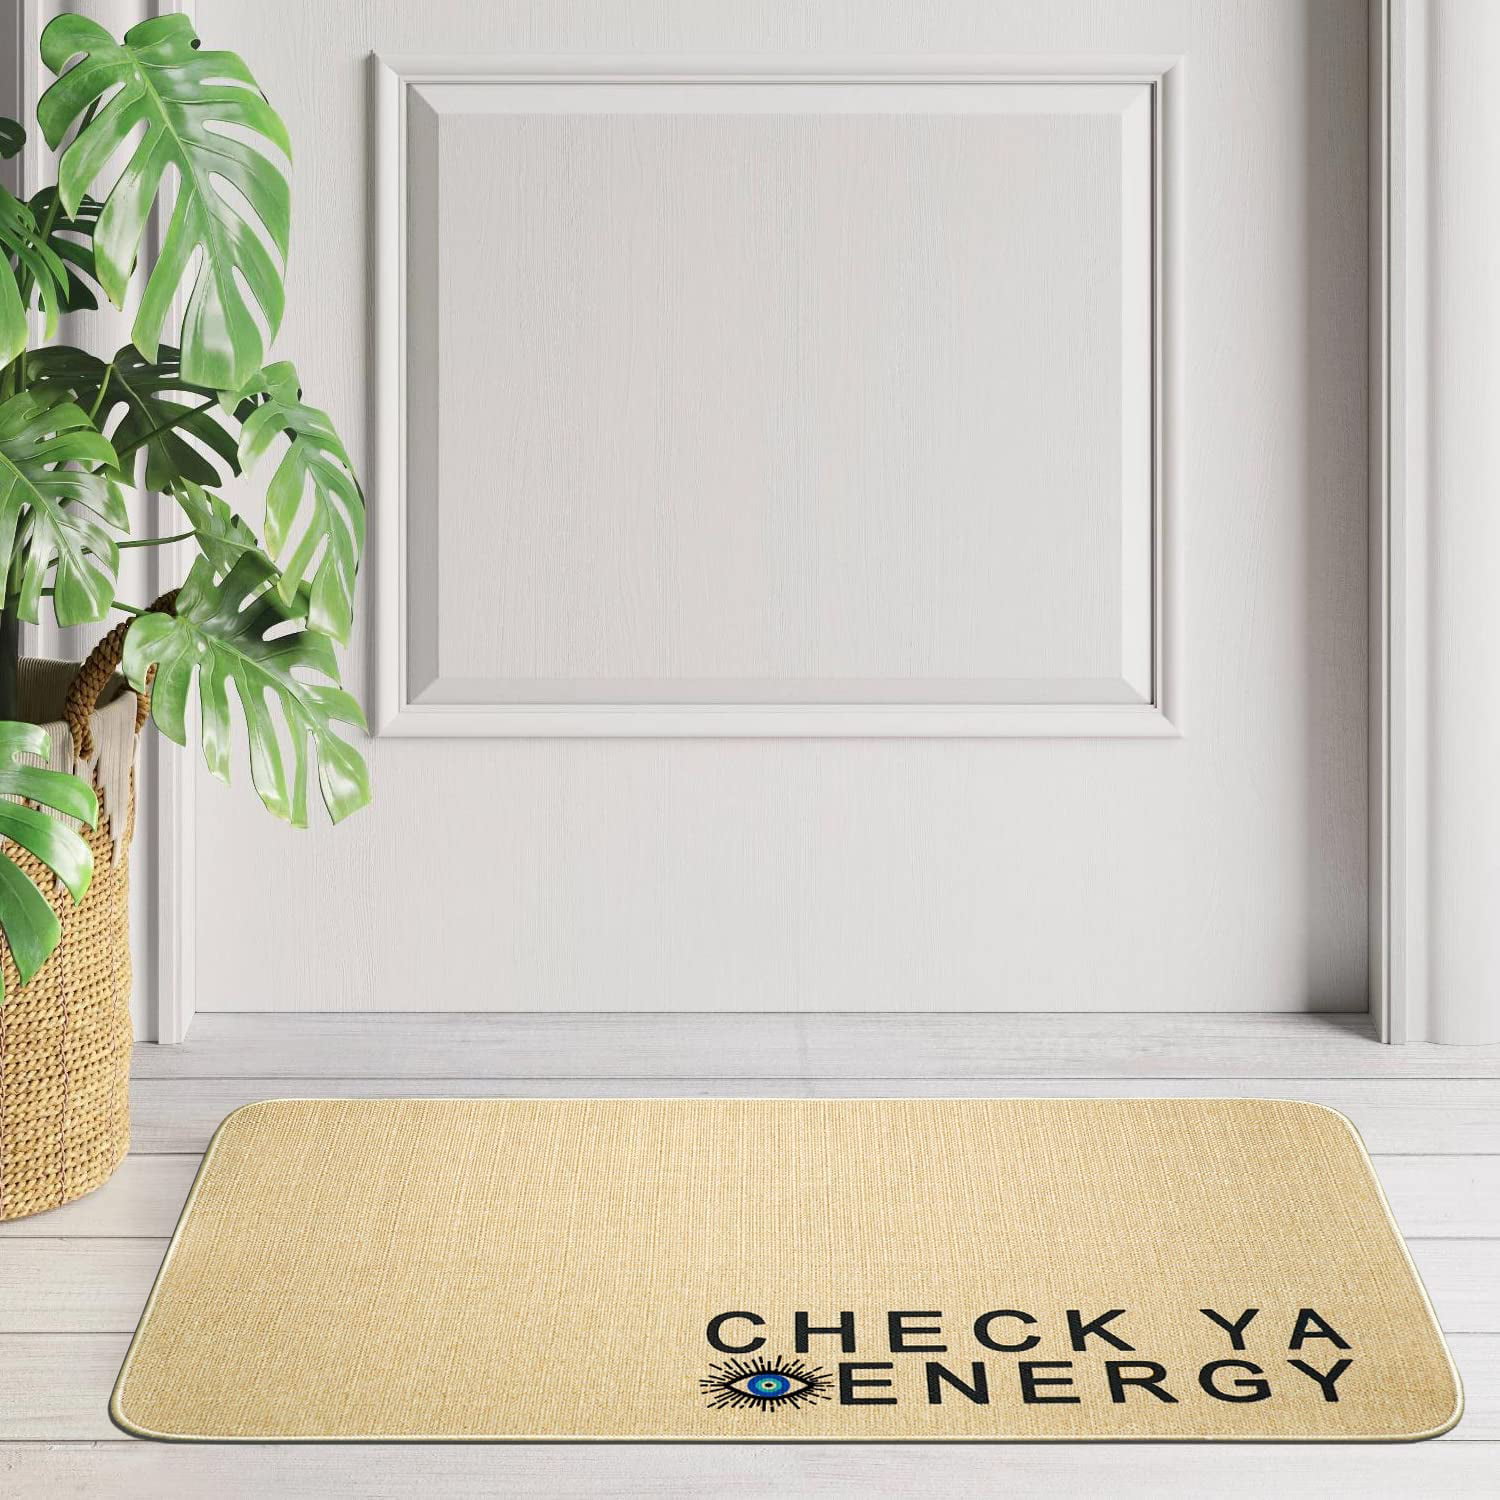 No Se Aceptan Visitas Sin Chisme Doormat Welcome Mat Funny Doormat Indoor  outdoor Floor Mats for